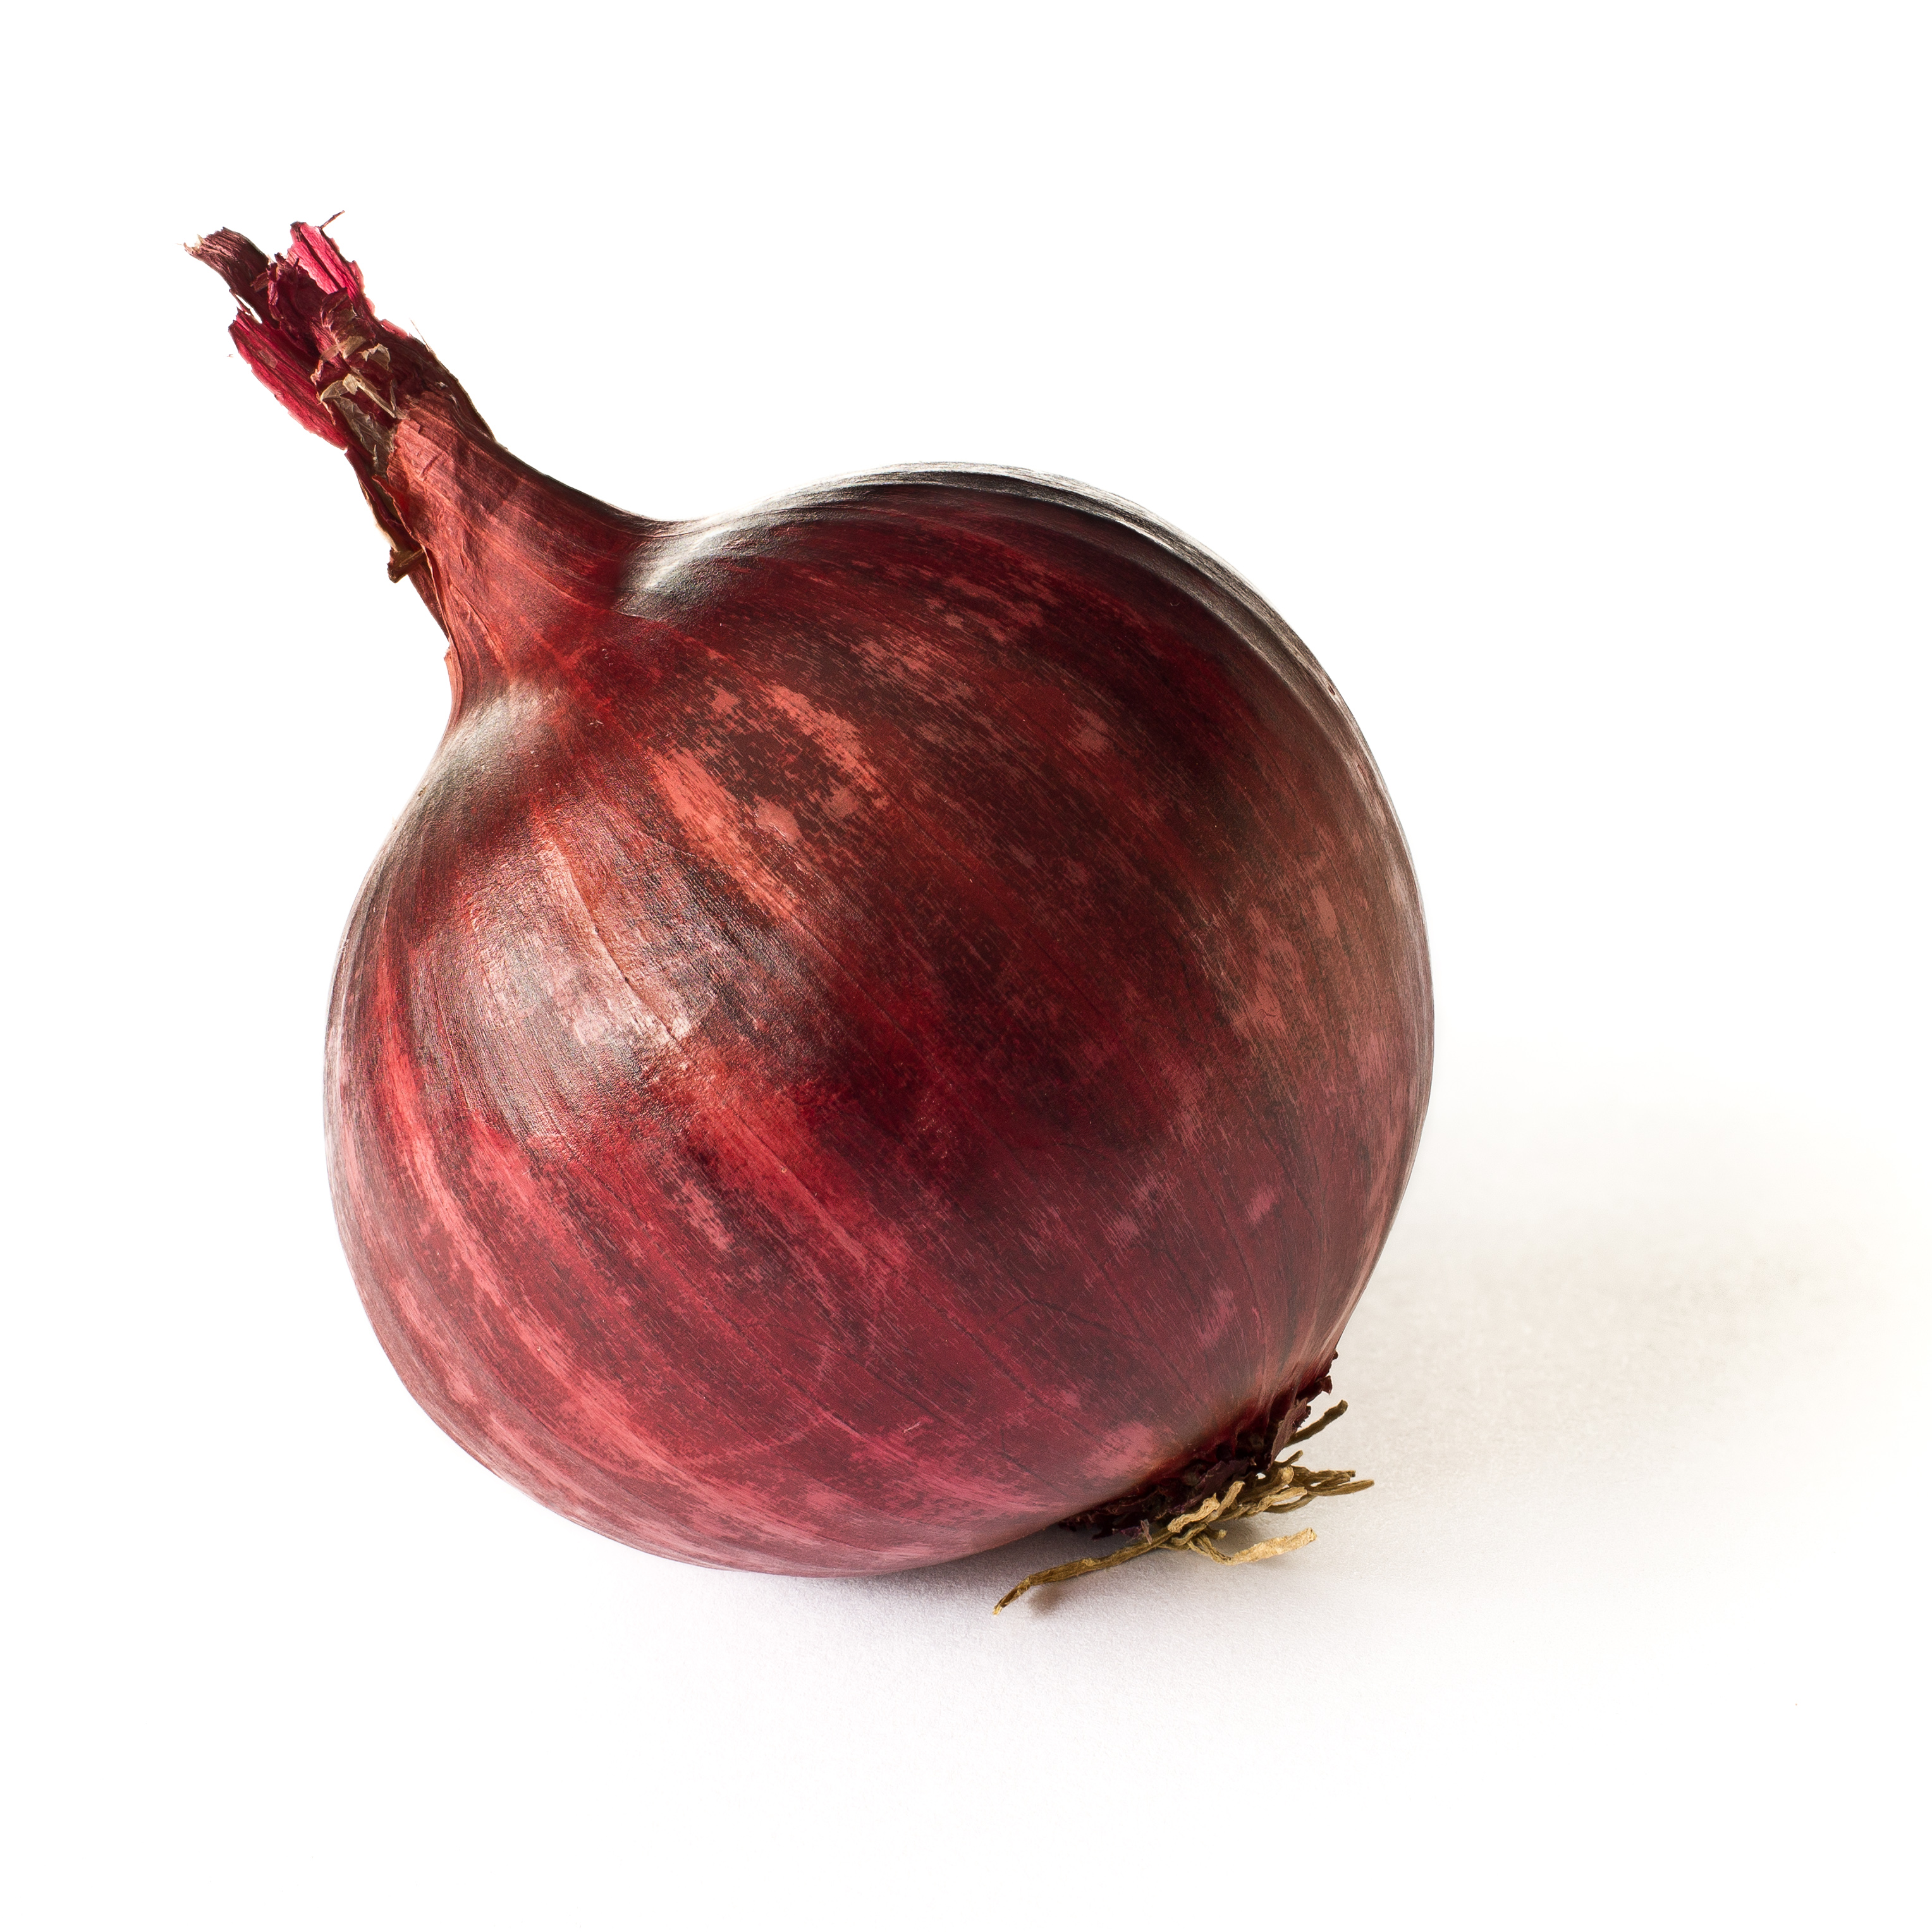 I love you, Stinky Onion